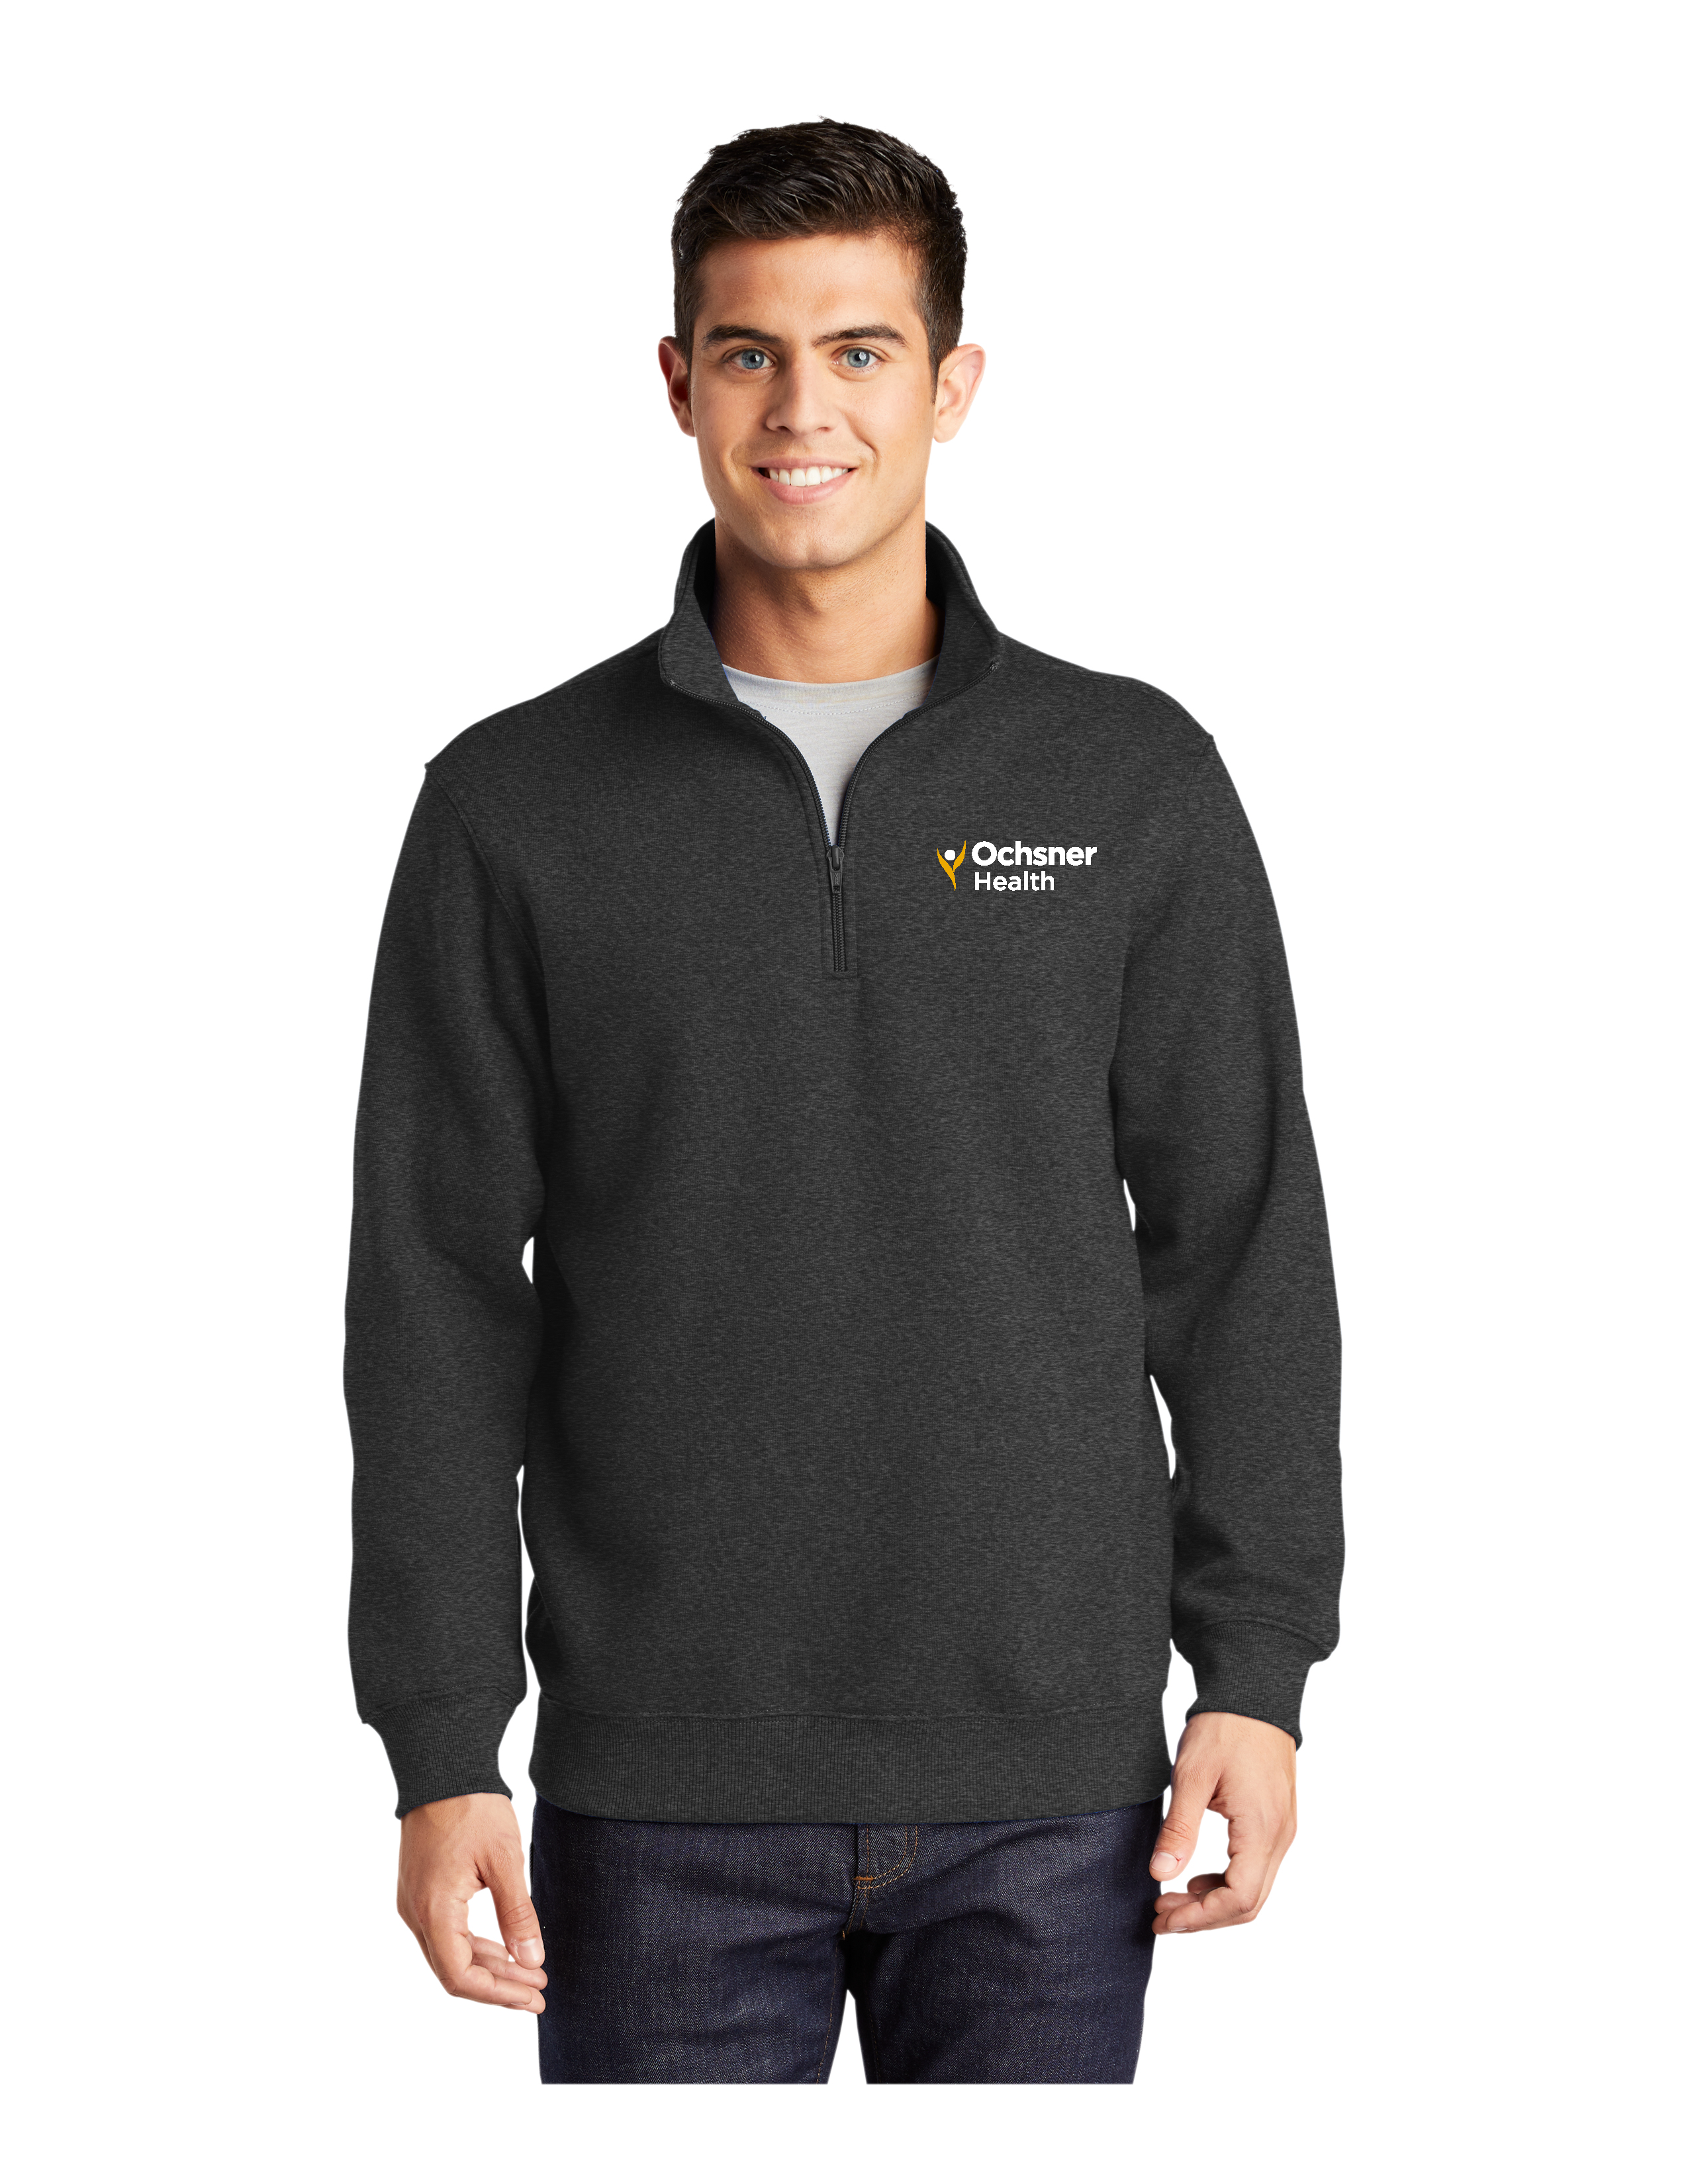 Men's 1/4 Zip Sweatshirt, Gray, large image number 1